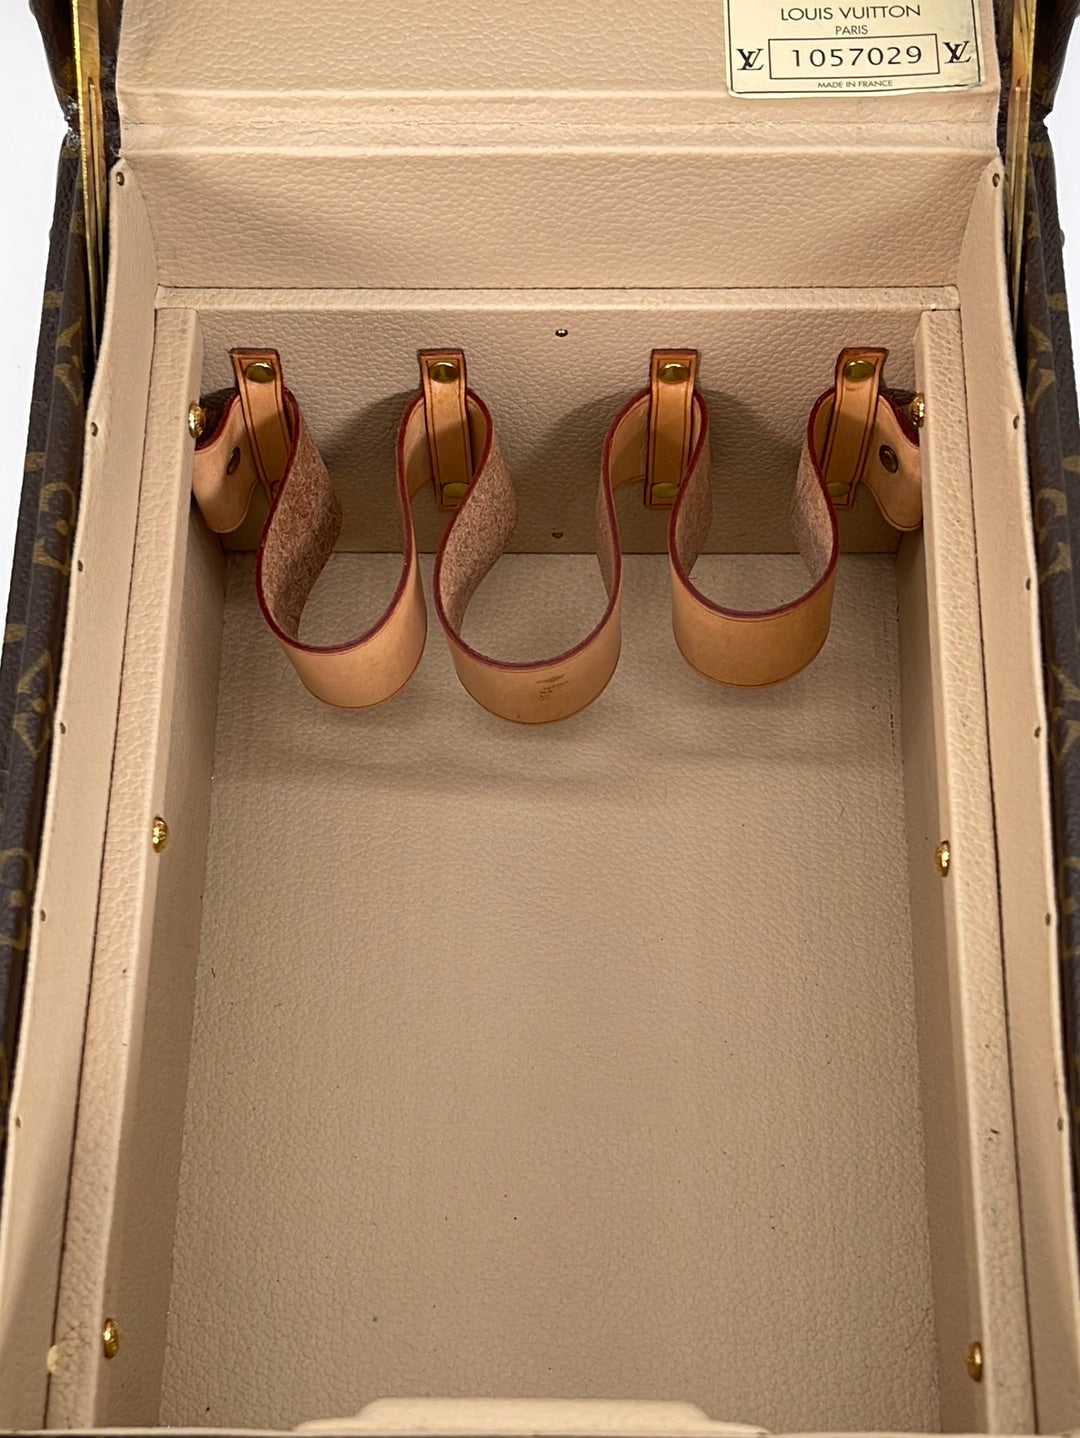 Authentic LOUIS VUITTON Epi Leather Boite Flacons Beauty Train Hard Trunk  Case 